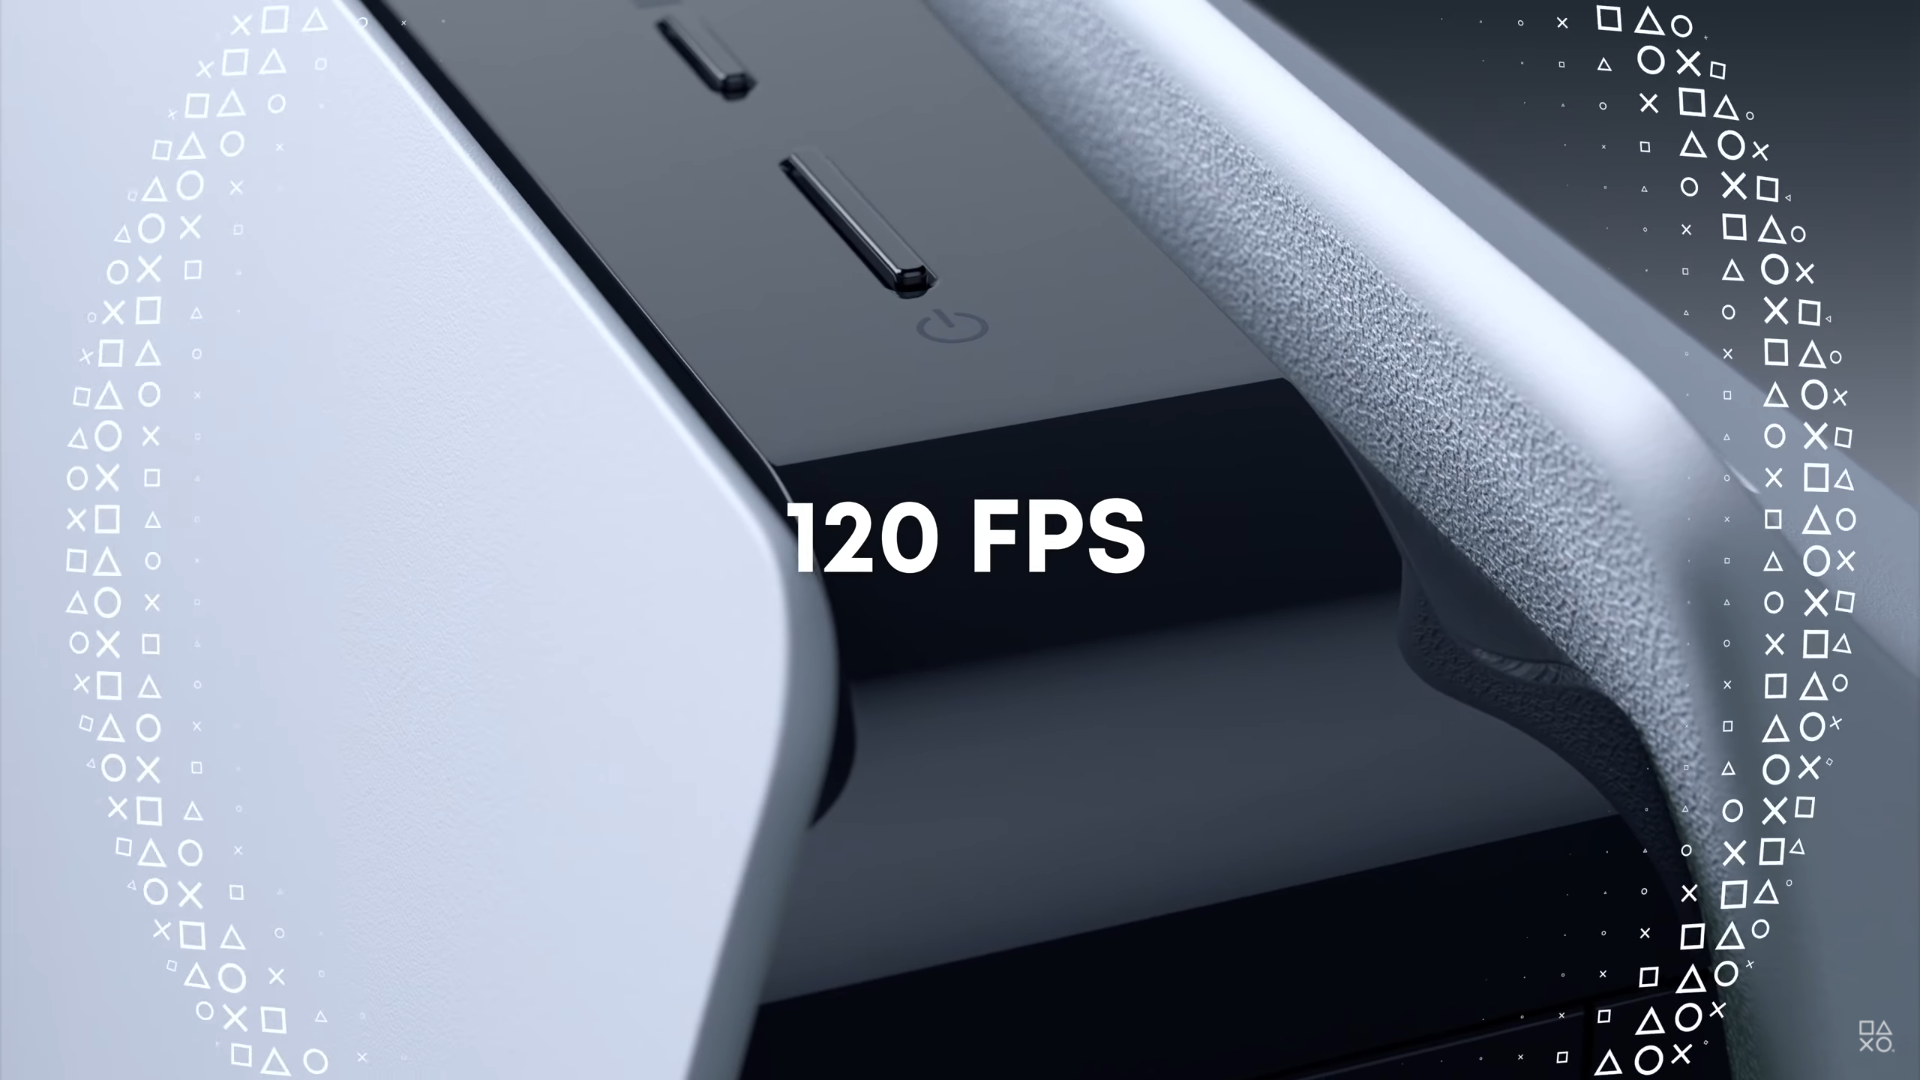 Una de las características nuevas y emocionantes de la PS5 es la capacidad de jugar juegos a 120 FPS